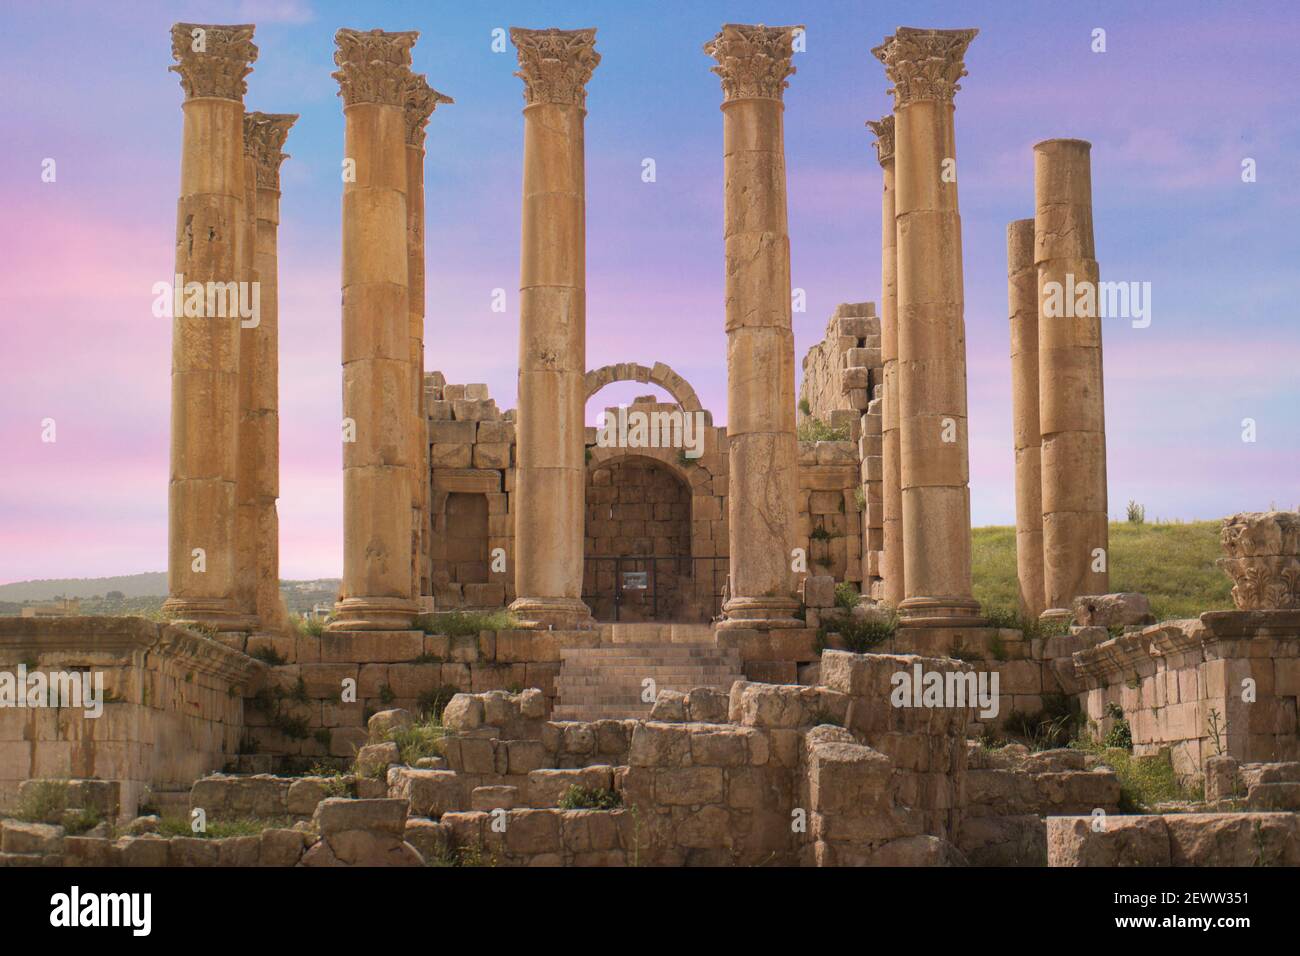 El sitio arqueológico de Jerash, ruinas antiguas y romanas de Jerash (Gerasa), lugar histórico en Jerash, Jordania. Foto de stock